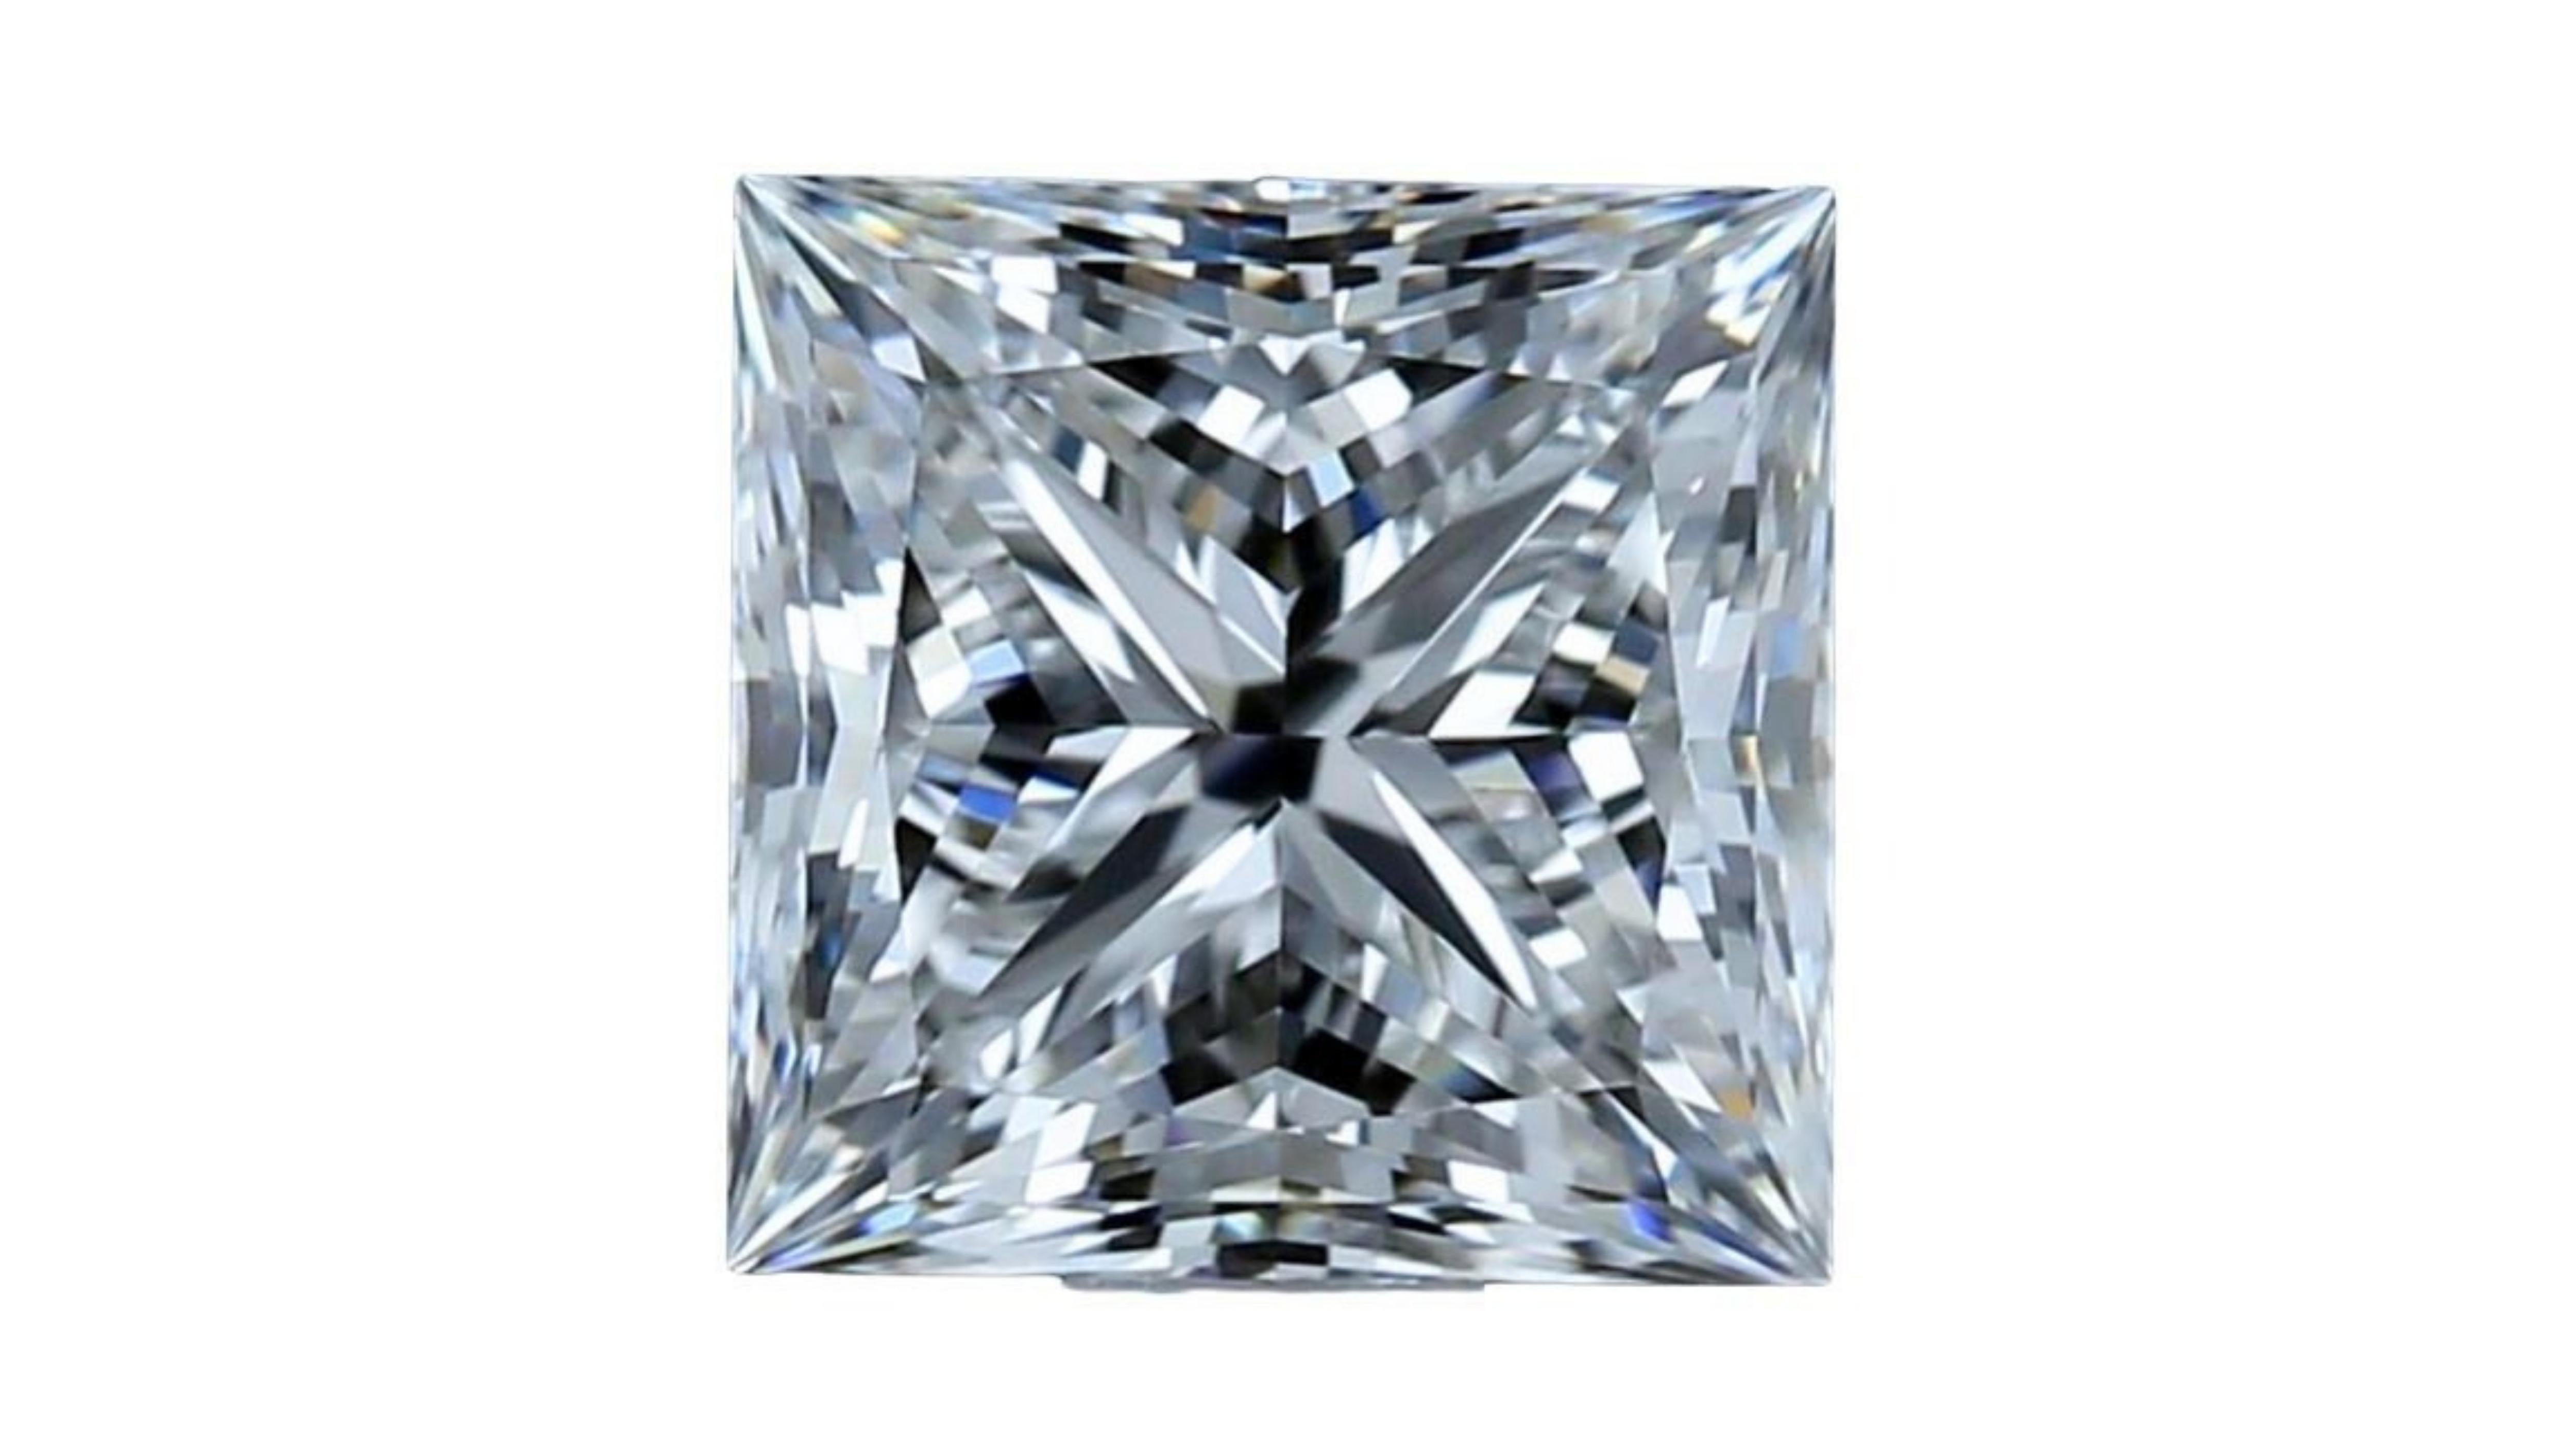 Il s'agit d'un diamant de 1,5 carat G VS1 de très bon poli et de bonne symétrie, de forme carrée, modifié en brillant. Elle est certifiée GIA et porte un numéro d'inscription au laser. Le diamant est en excellent état et présente un aspect